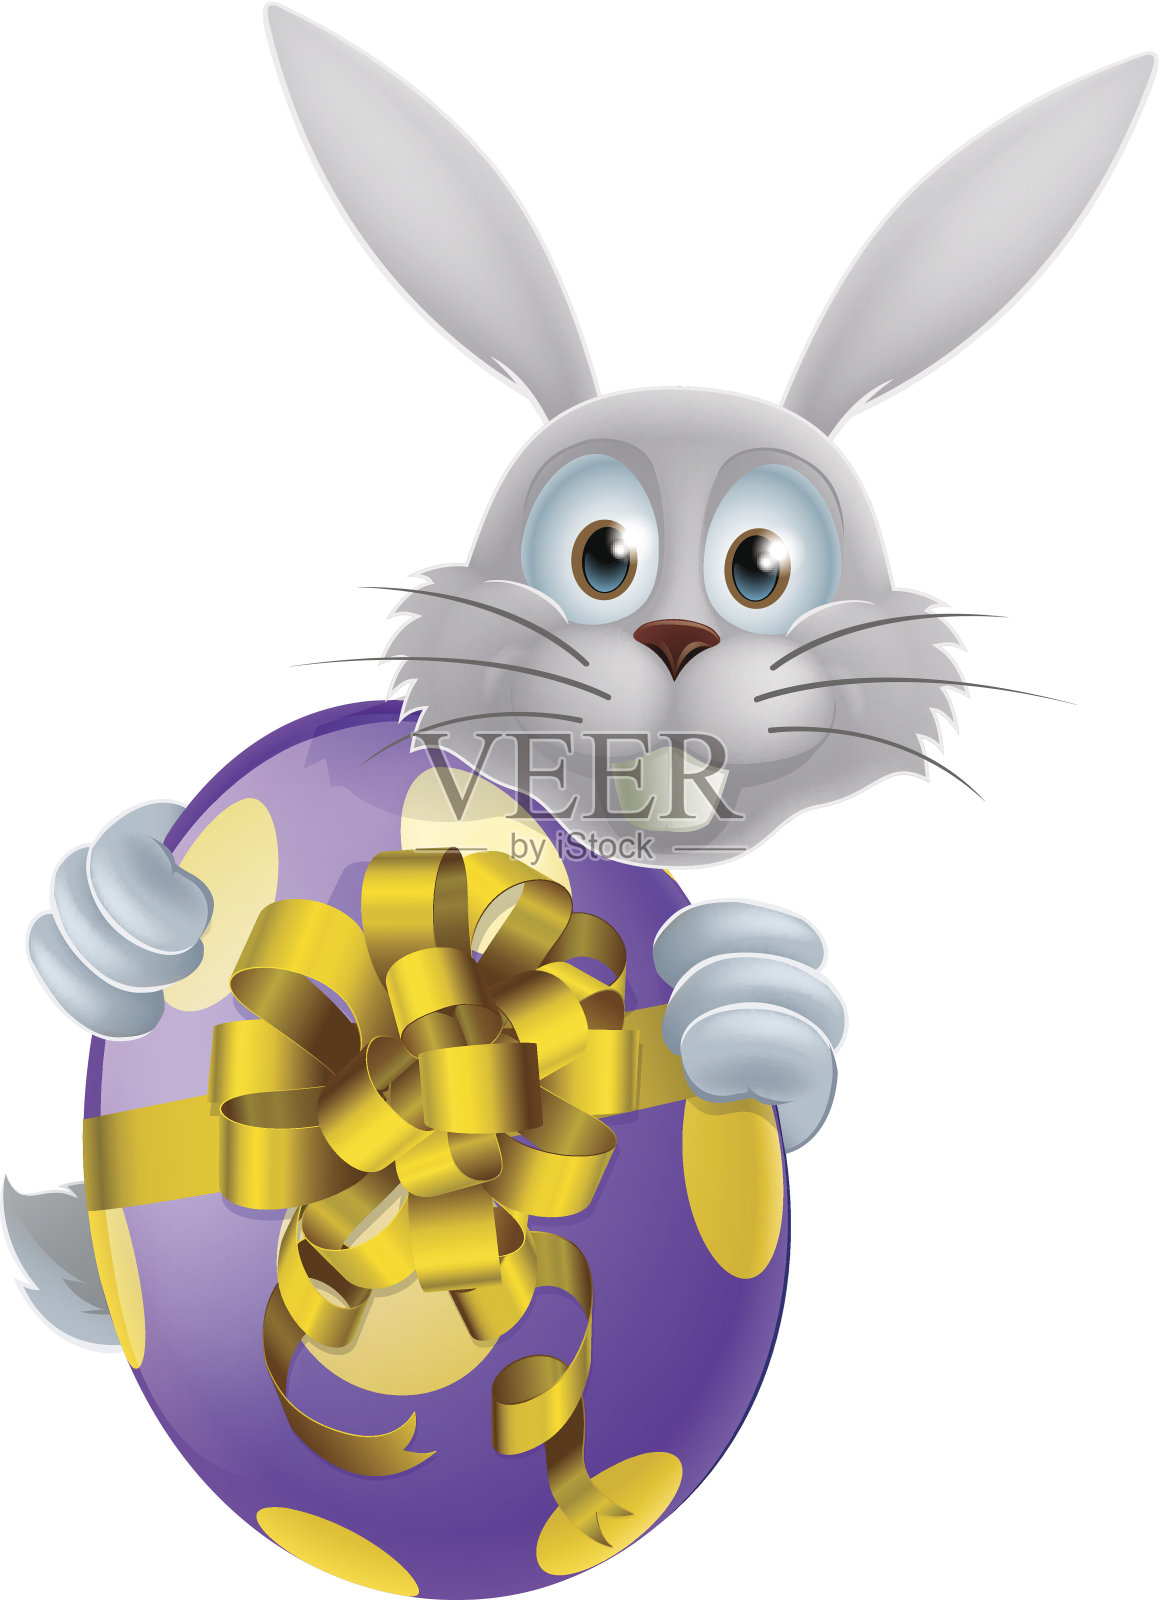 巨大的复活节彩蛋和白色小兔子插画图片素材